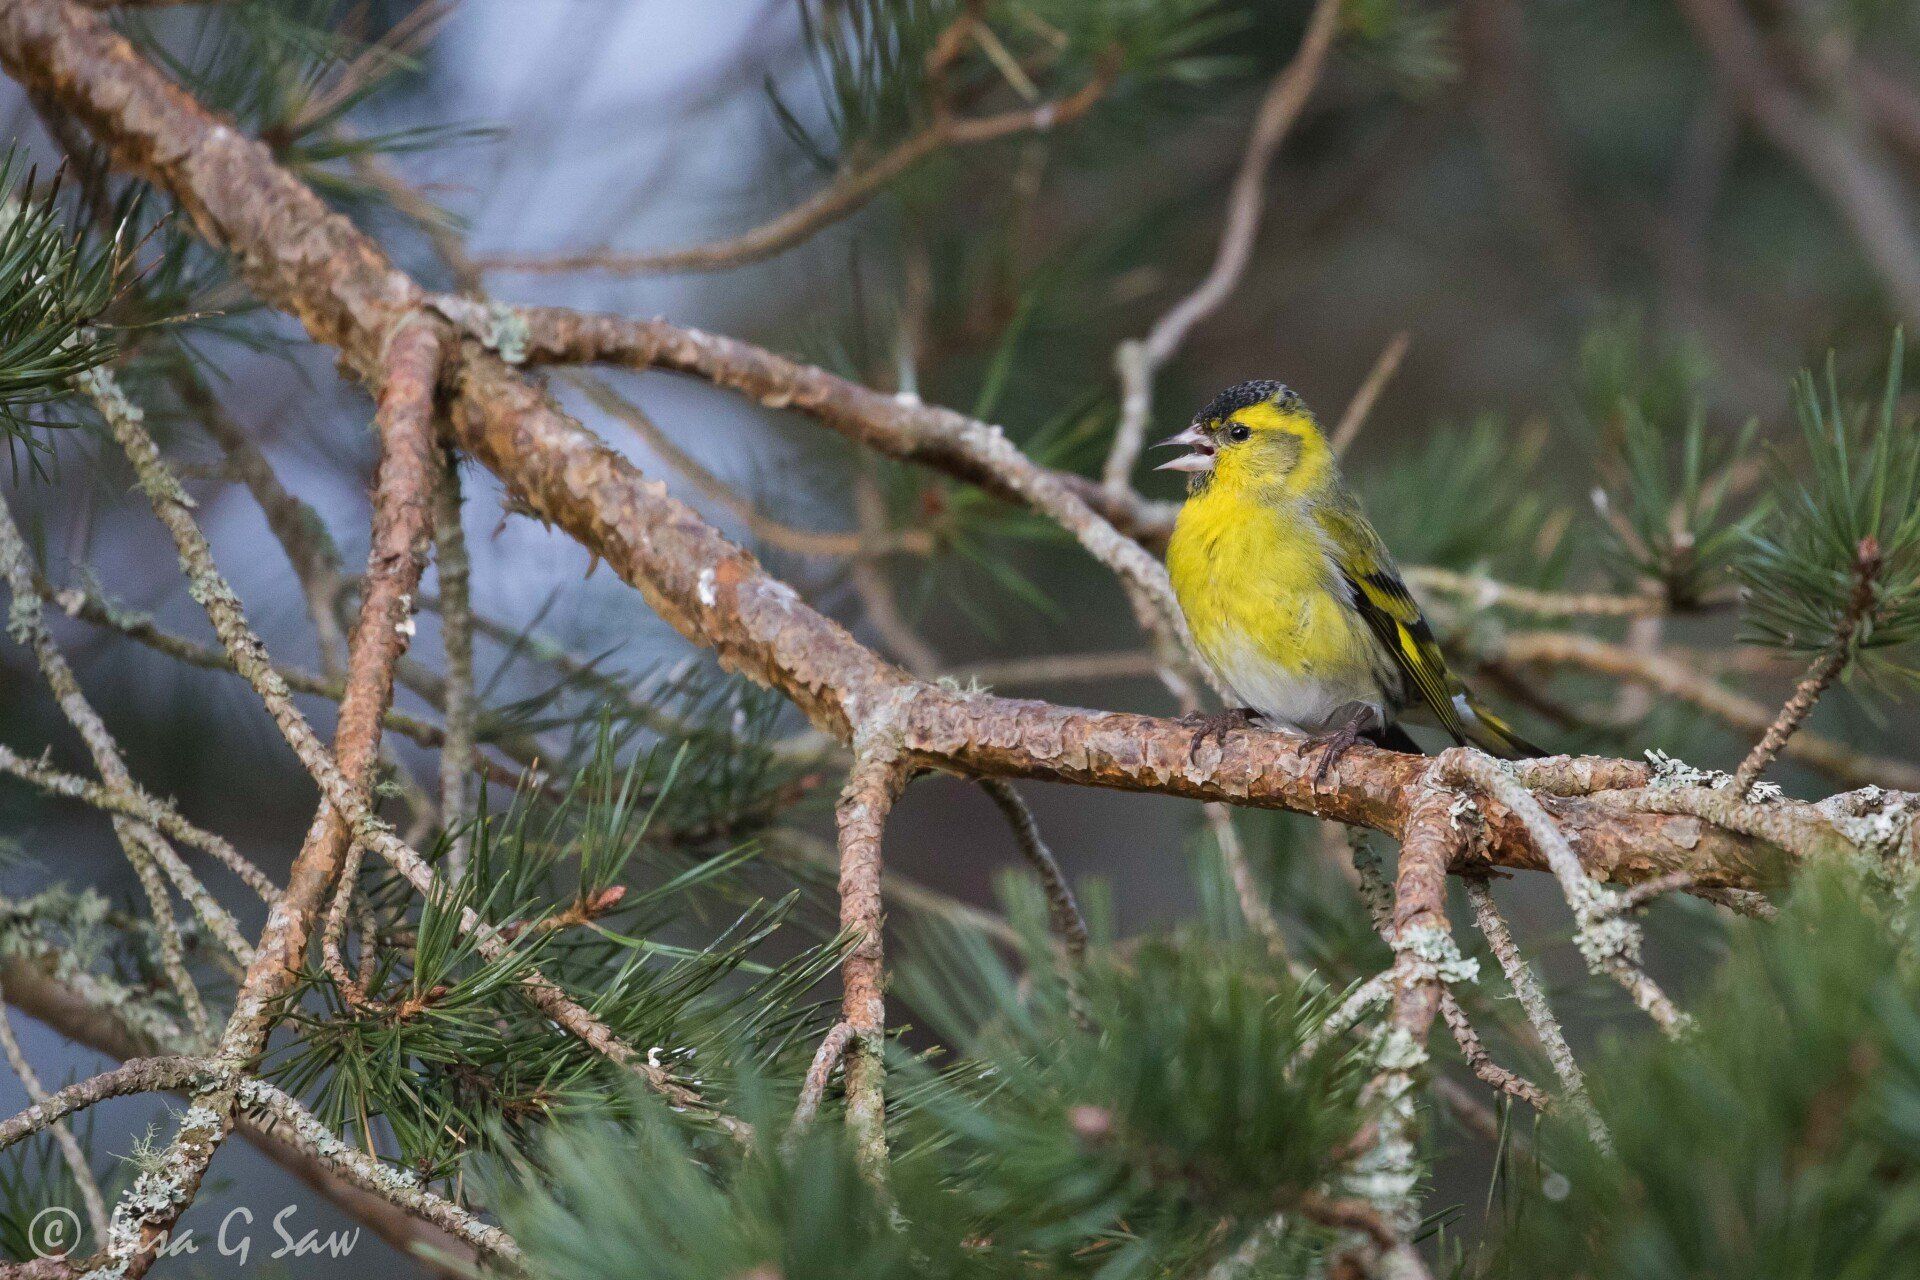 Male Siskin perched on pine tree branch beak open